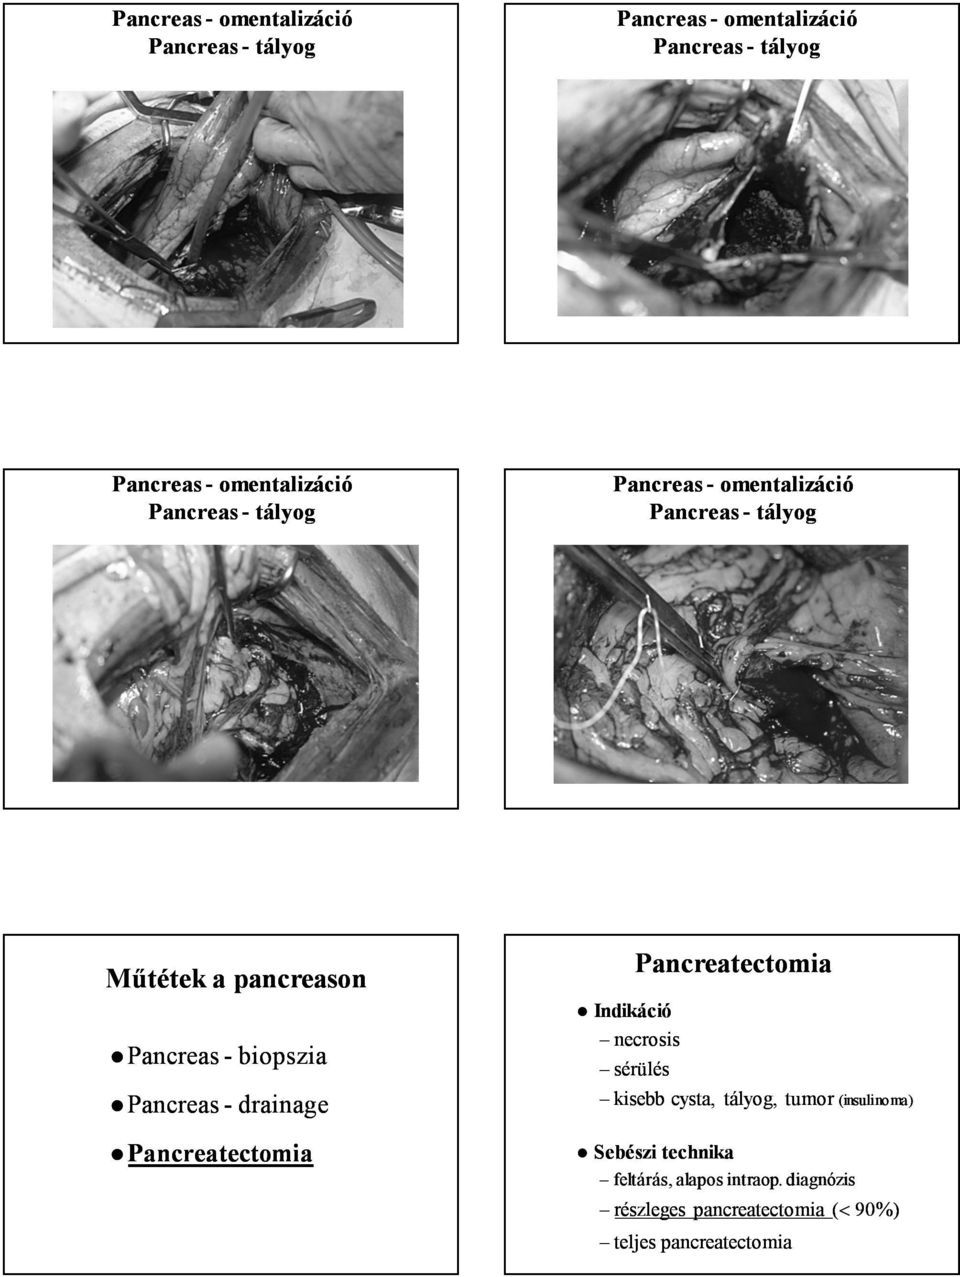 Pancreatectomia necrosis sérülés Pancreatectomia kisebb cysta, tályog, tumor tumor